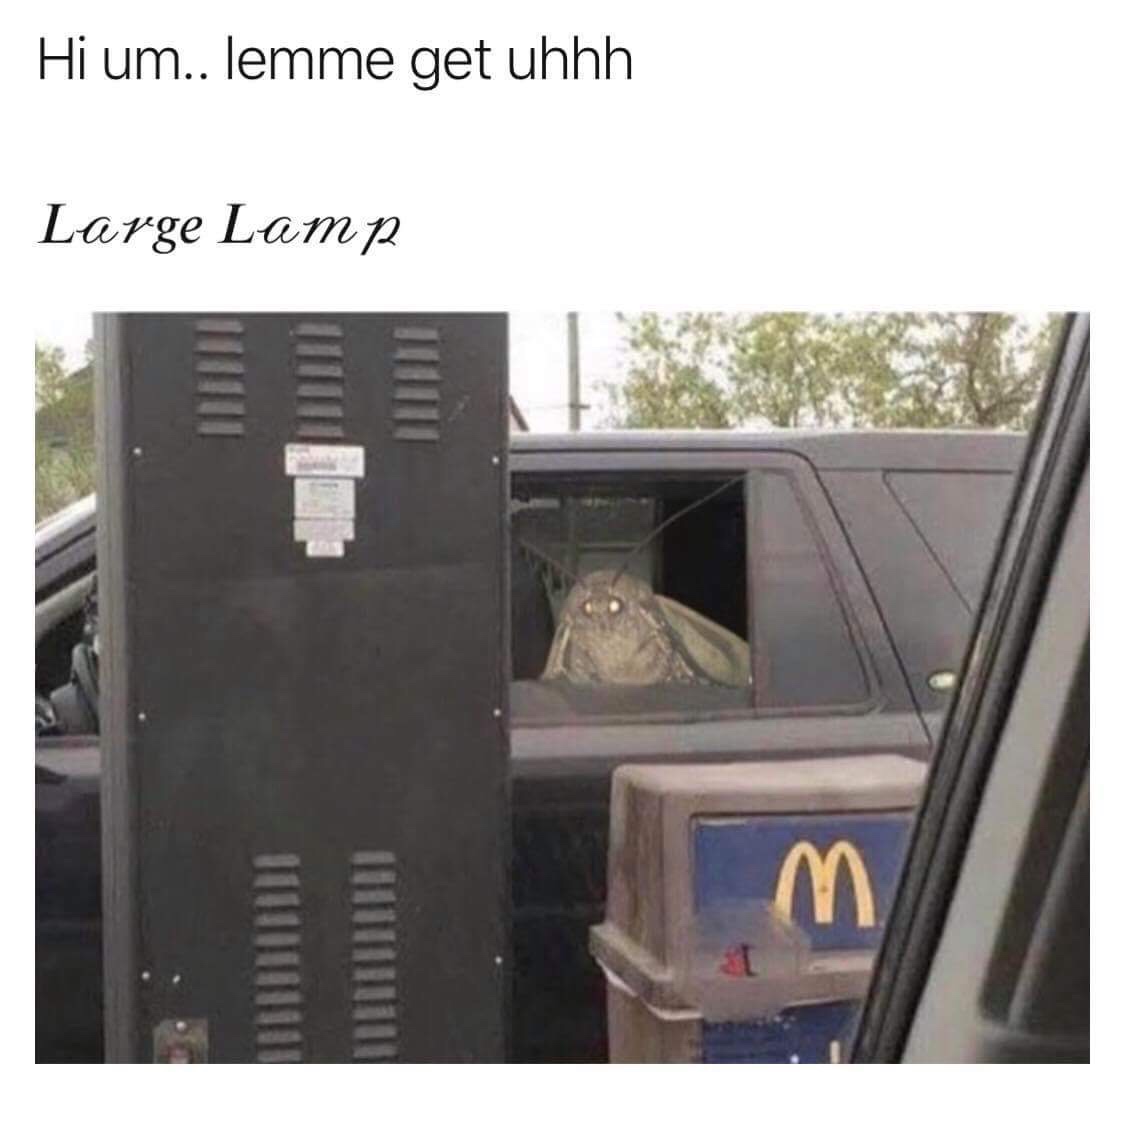 can i get uhhh lamp - Hi um.. lemme get uhhh Large Lamp